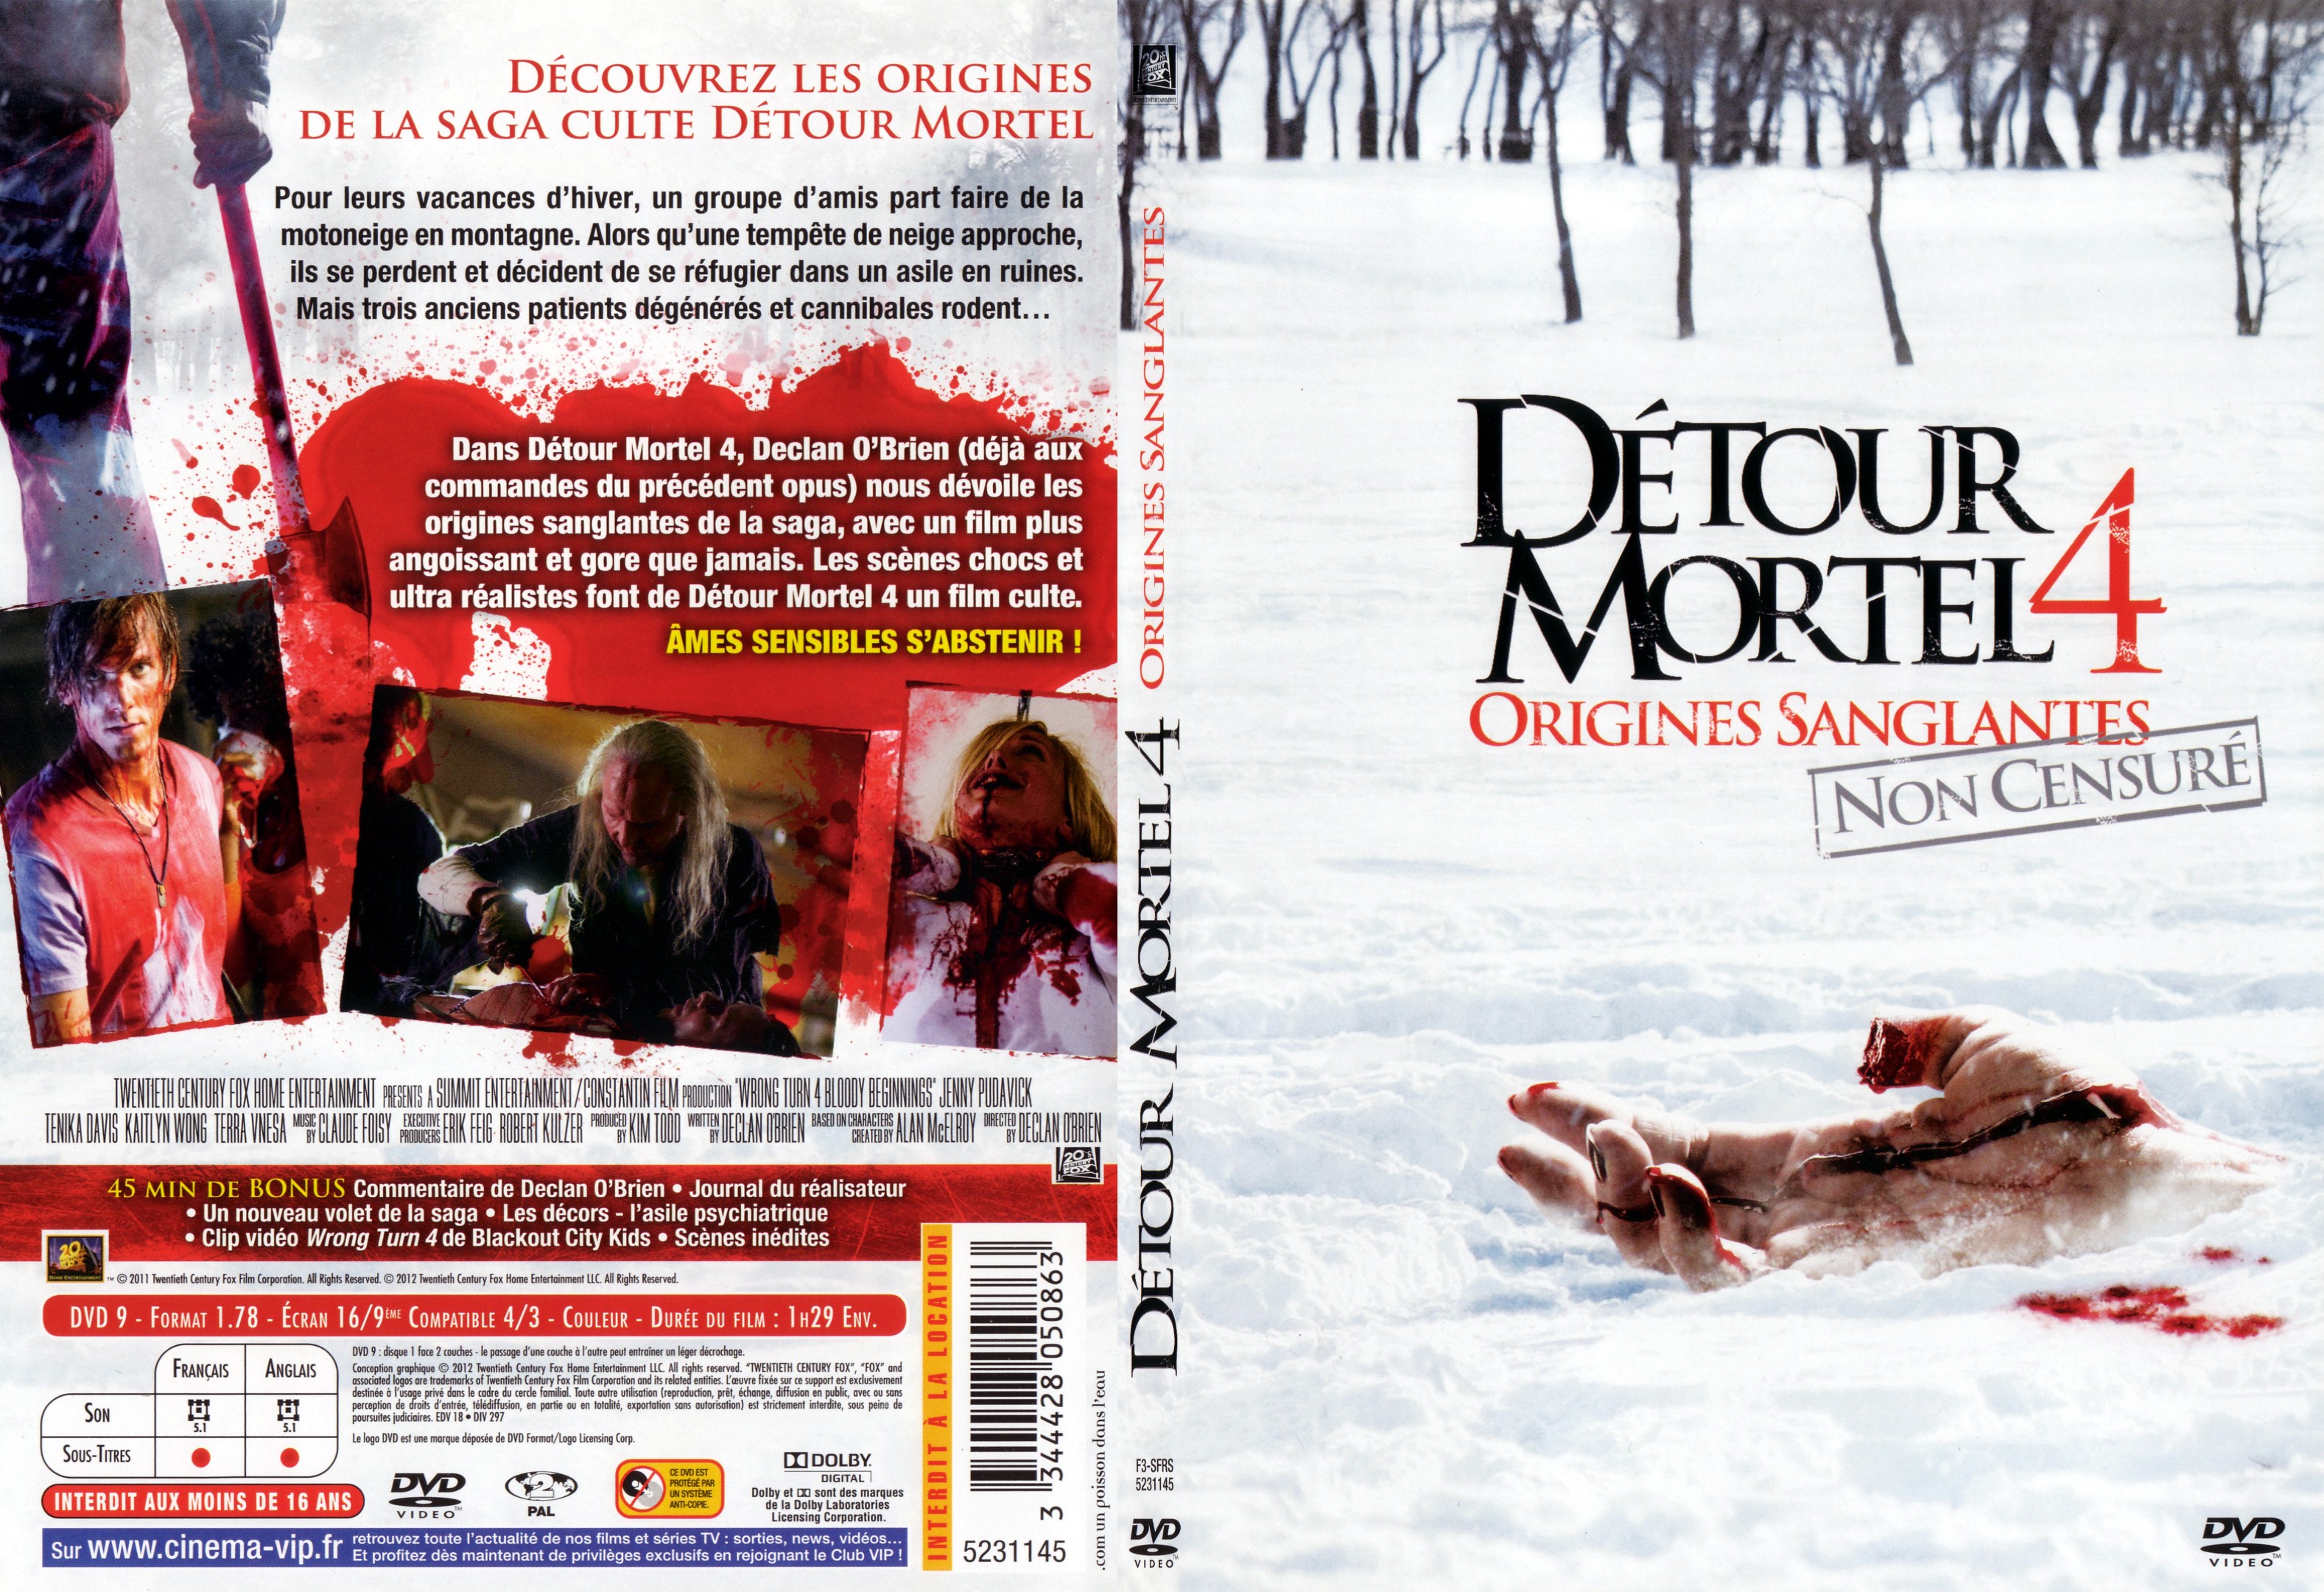 Jaquette DVD Detour mortel 4 - SLIM